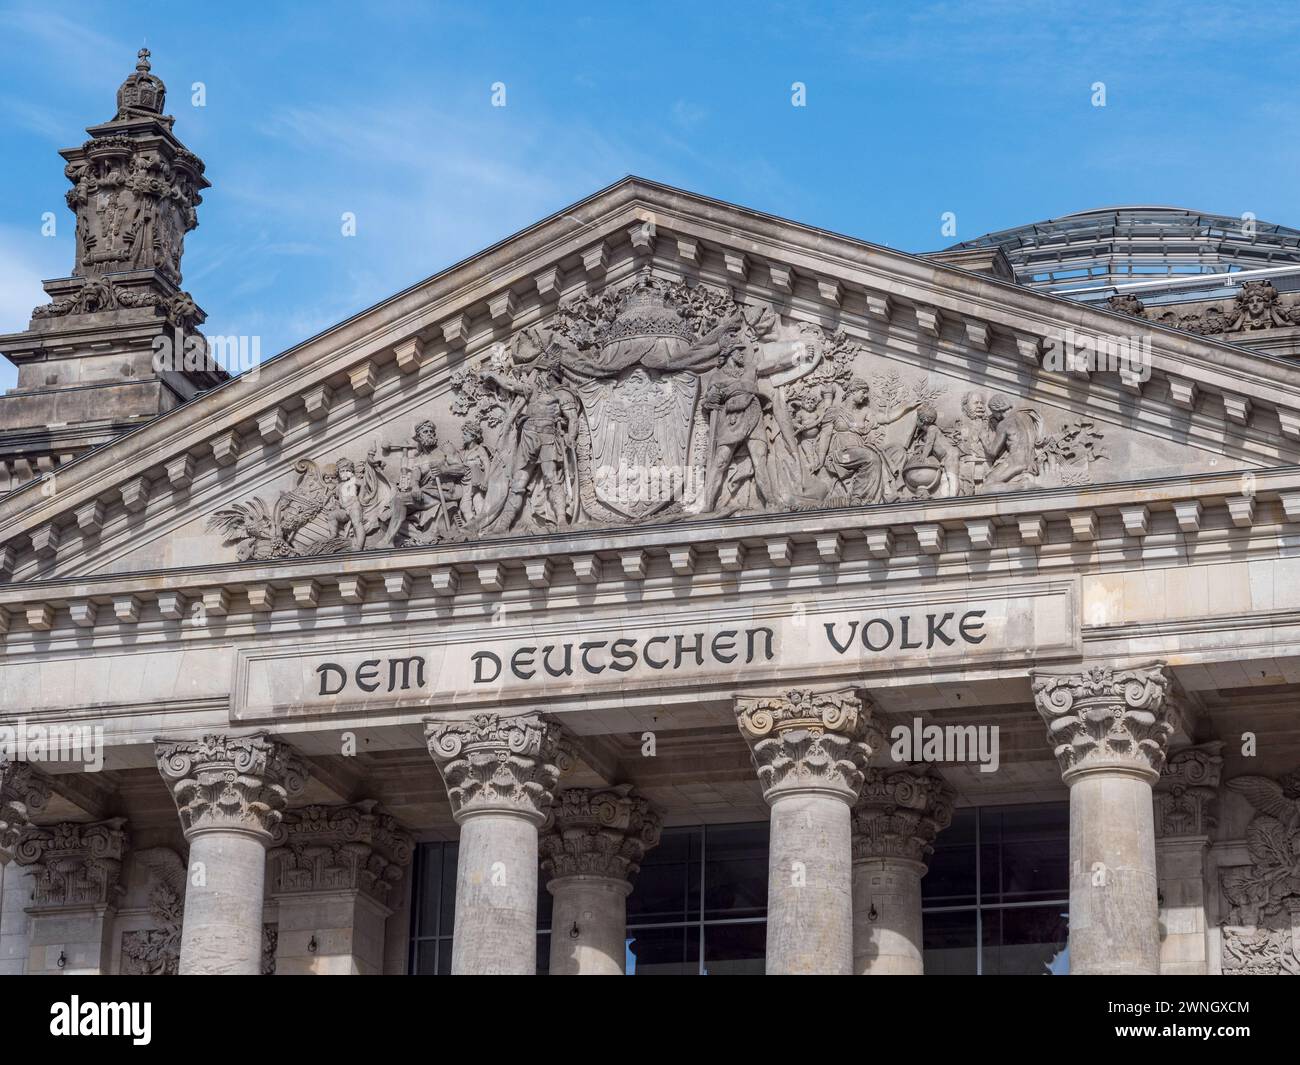 'Dem Deutschen Volke' on the Reichstag in Berlin, Germany. Stock Photo